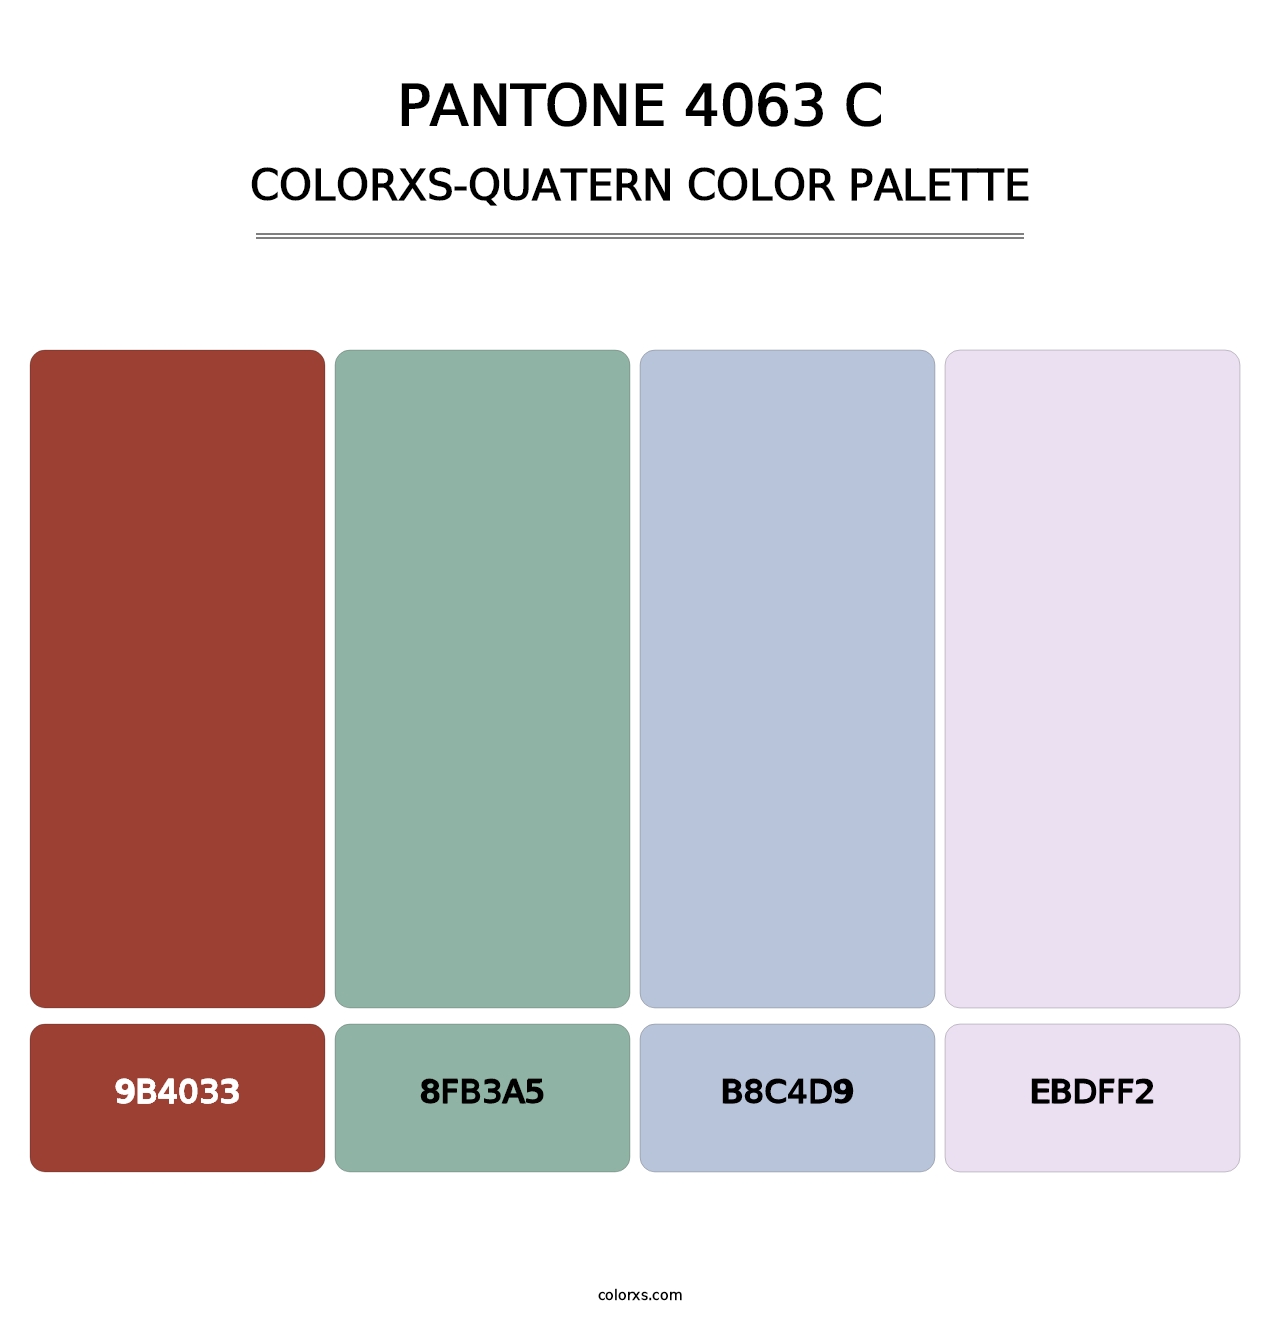 PANTONE 4063 C - Colorxs Quatern Palette